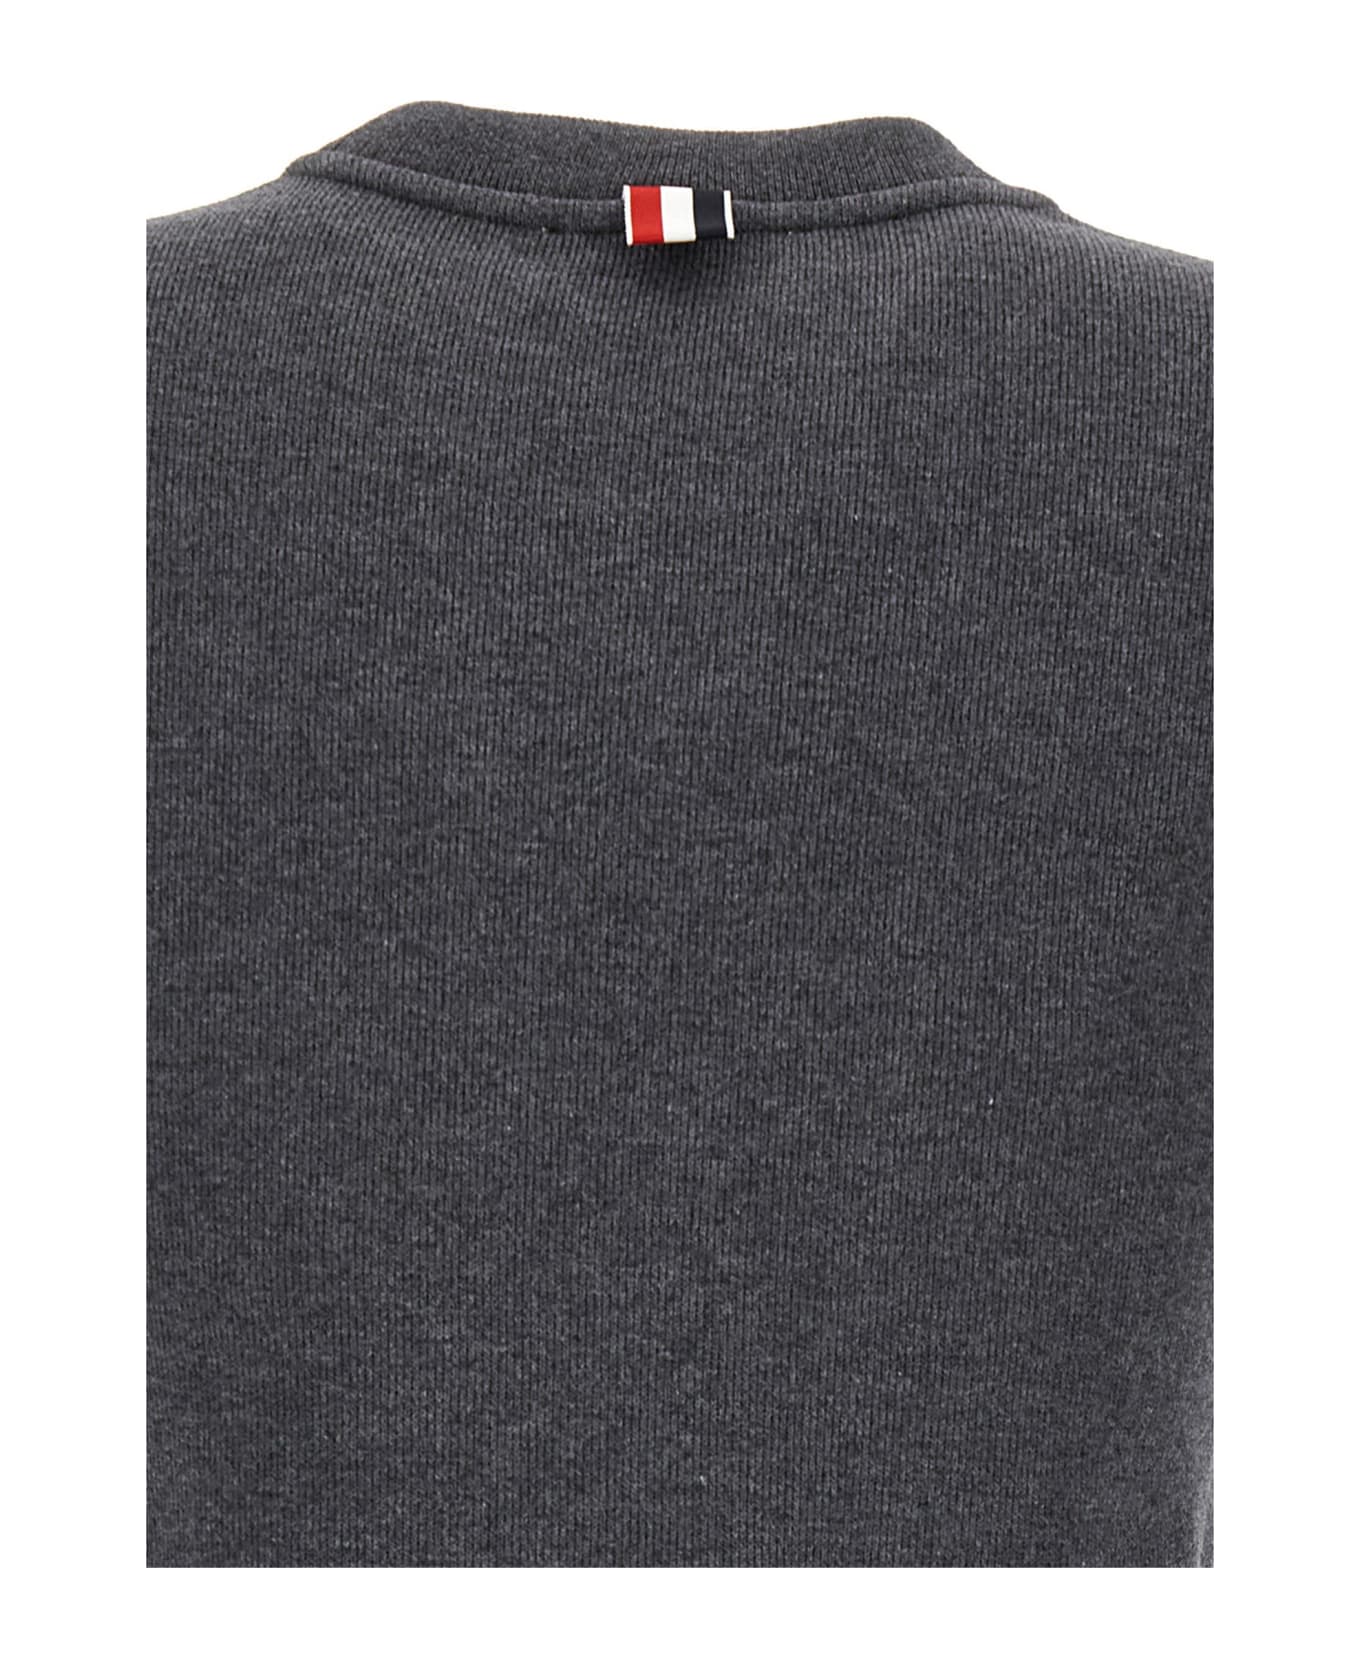 Thom Browne Short Sleeve Sweatshirt - Grey